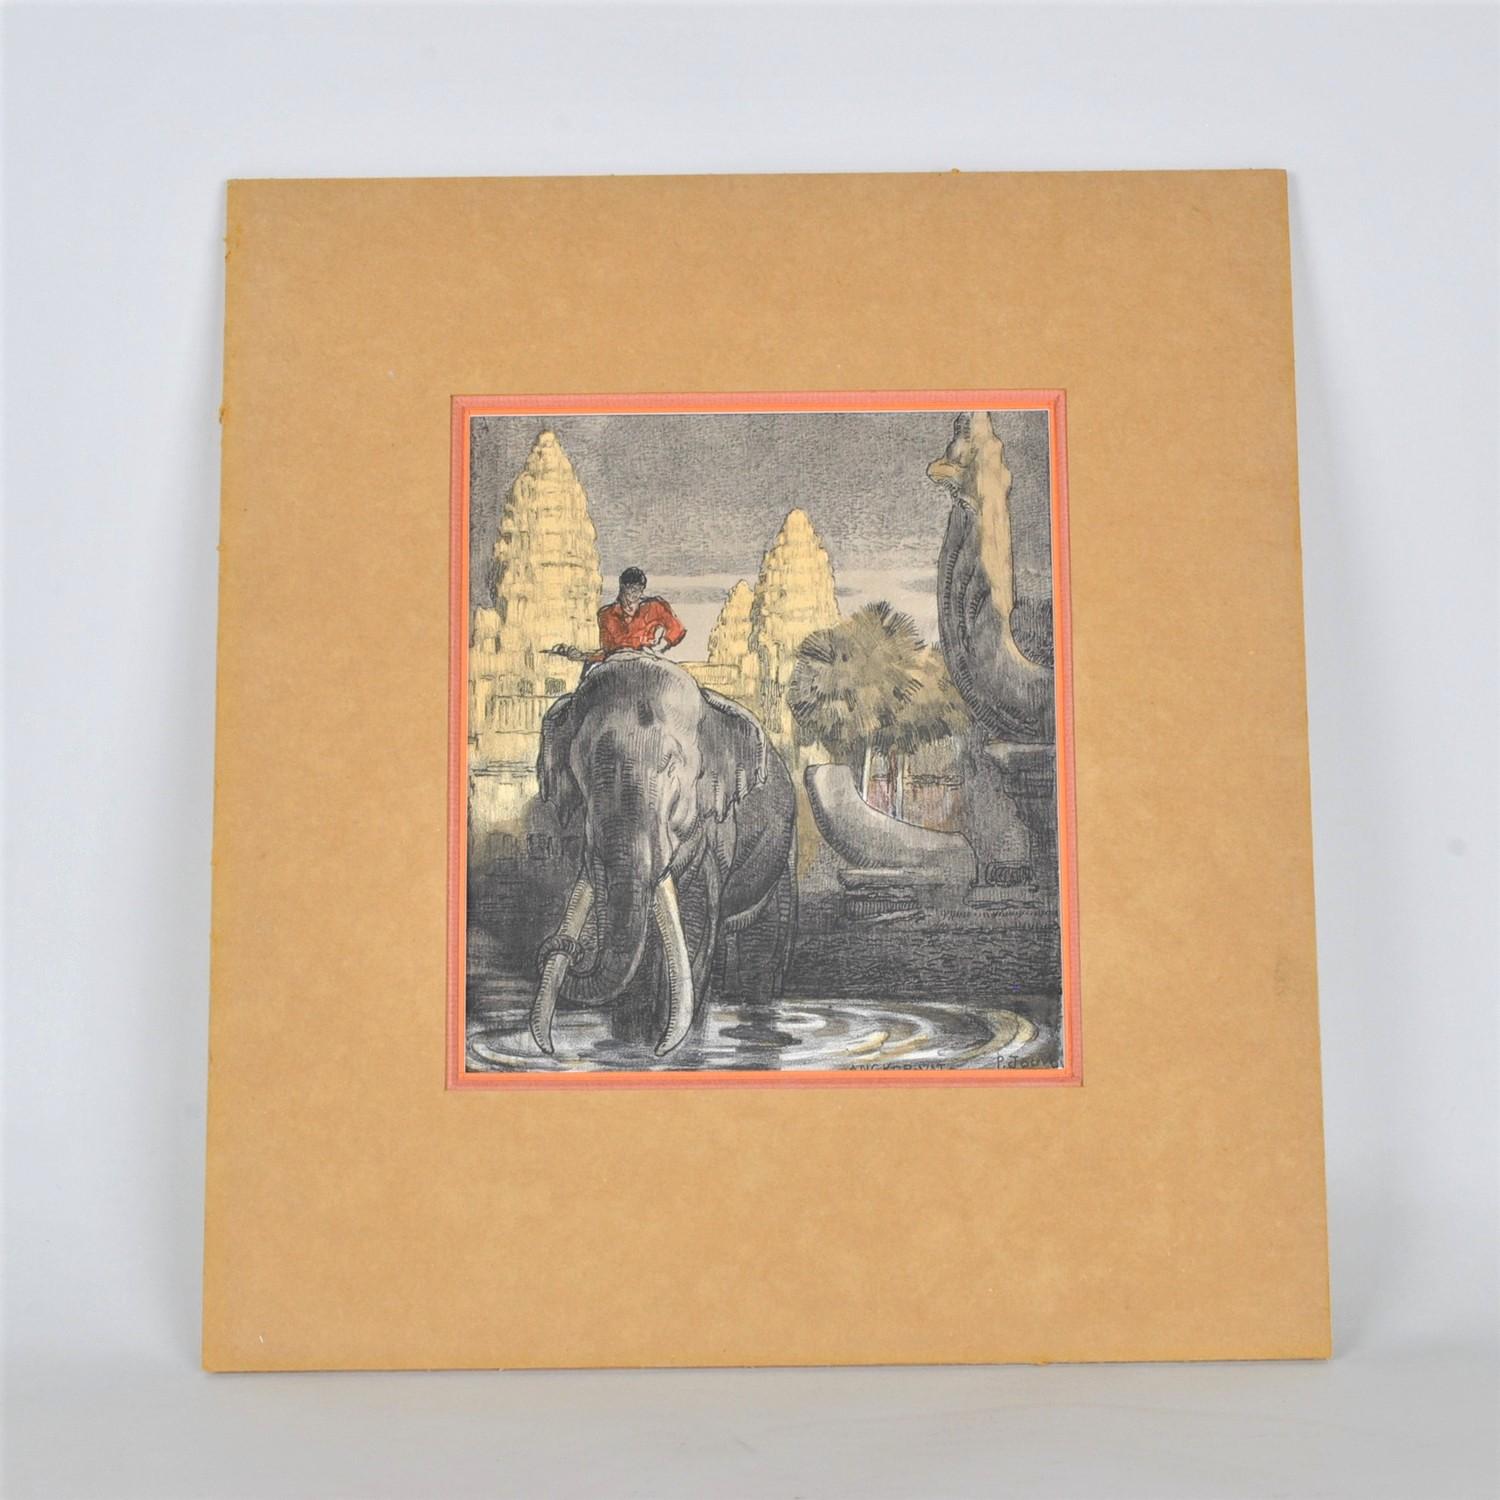 Farblithografie, gerahmt, mit der Darstellung eines Elefanten vor den Tempeln von Angkor Wat, rechts unten betitelt und signiert.

Abmessungen am Bild 18x20cm
Abmessungen bei Sicht 22,5 x 28cm